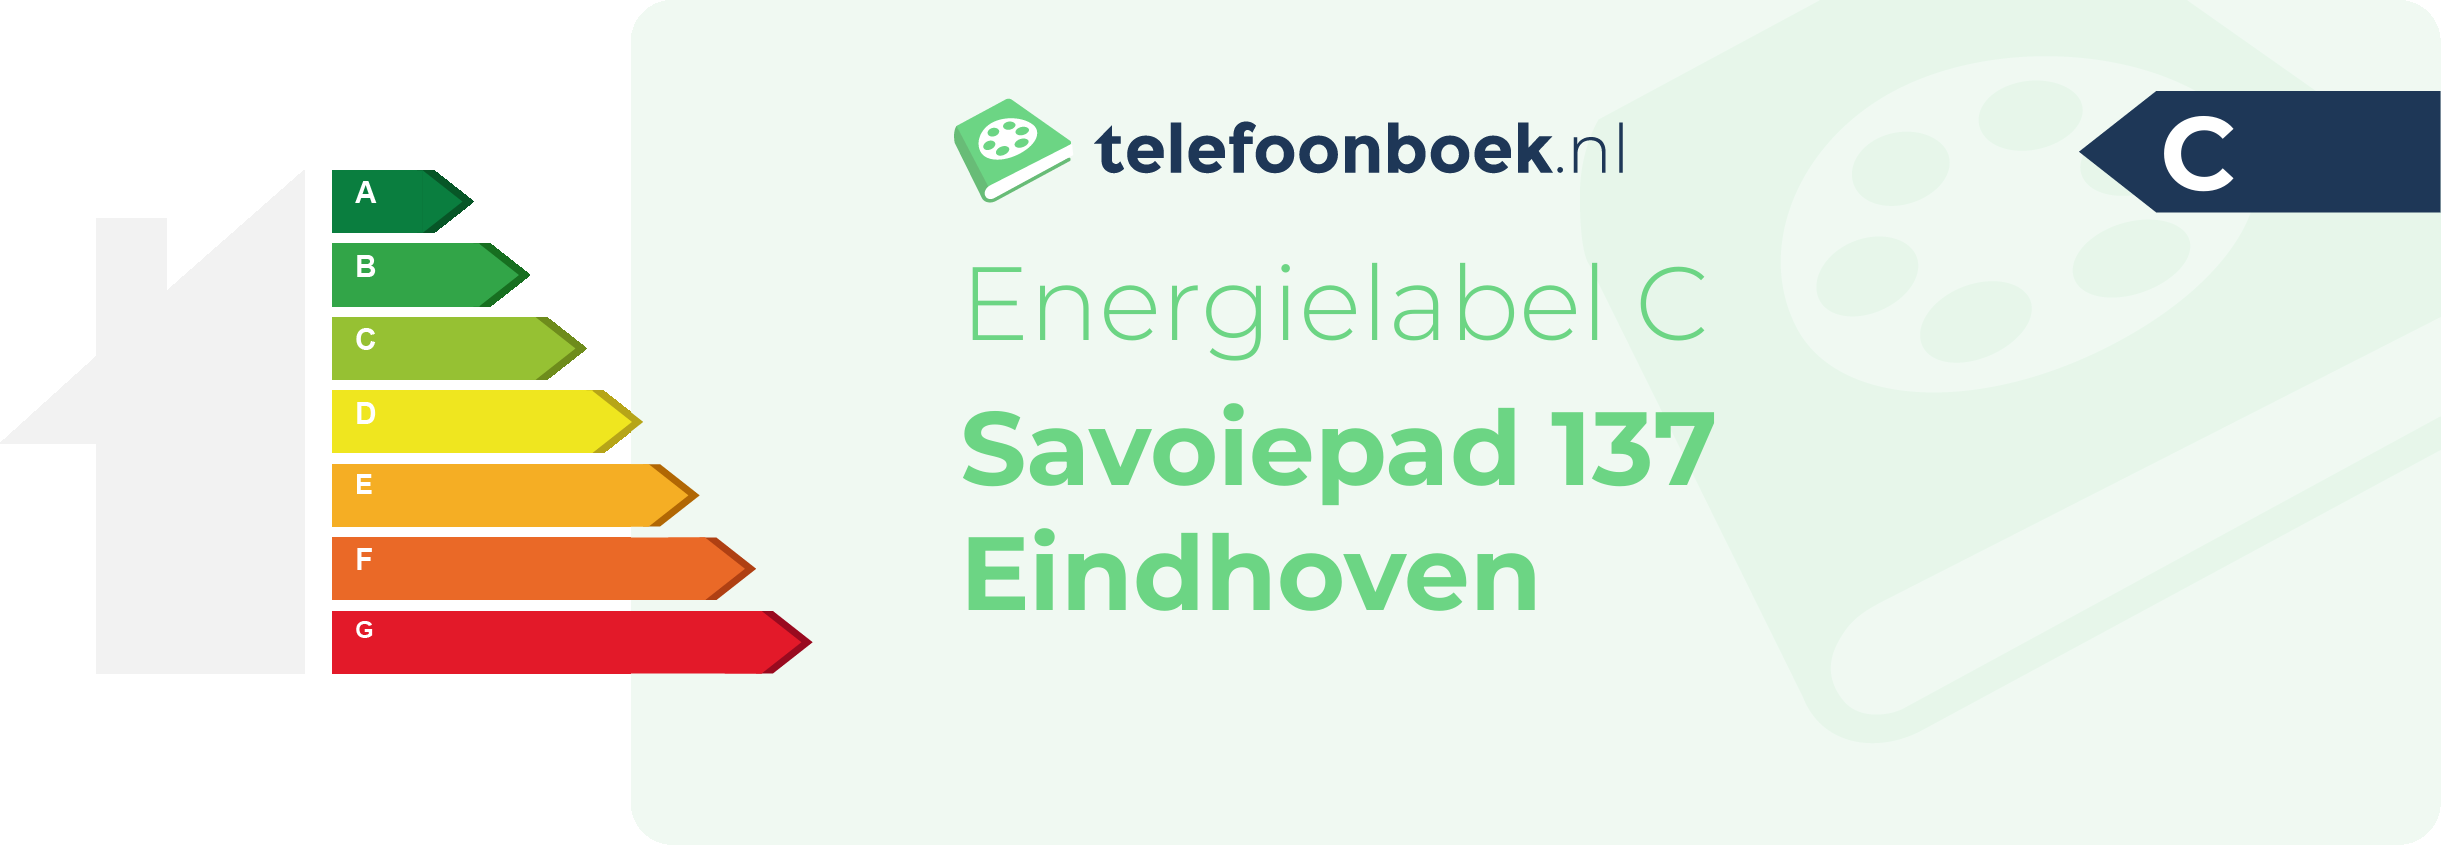 Energielabel Savoiepad 137 Eindhoven